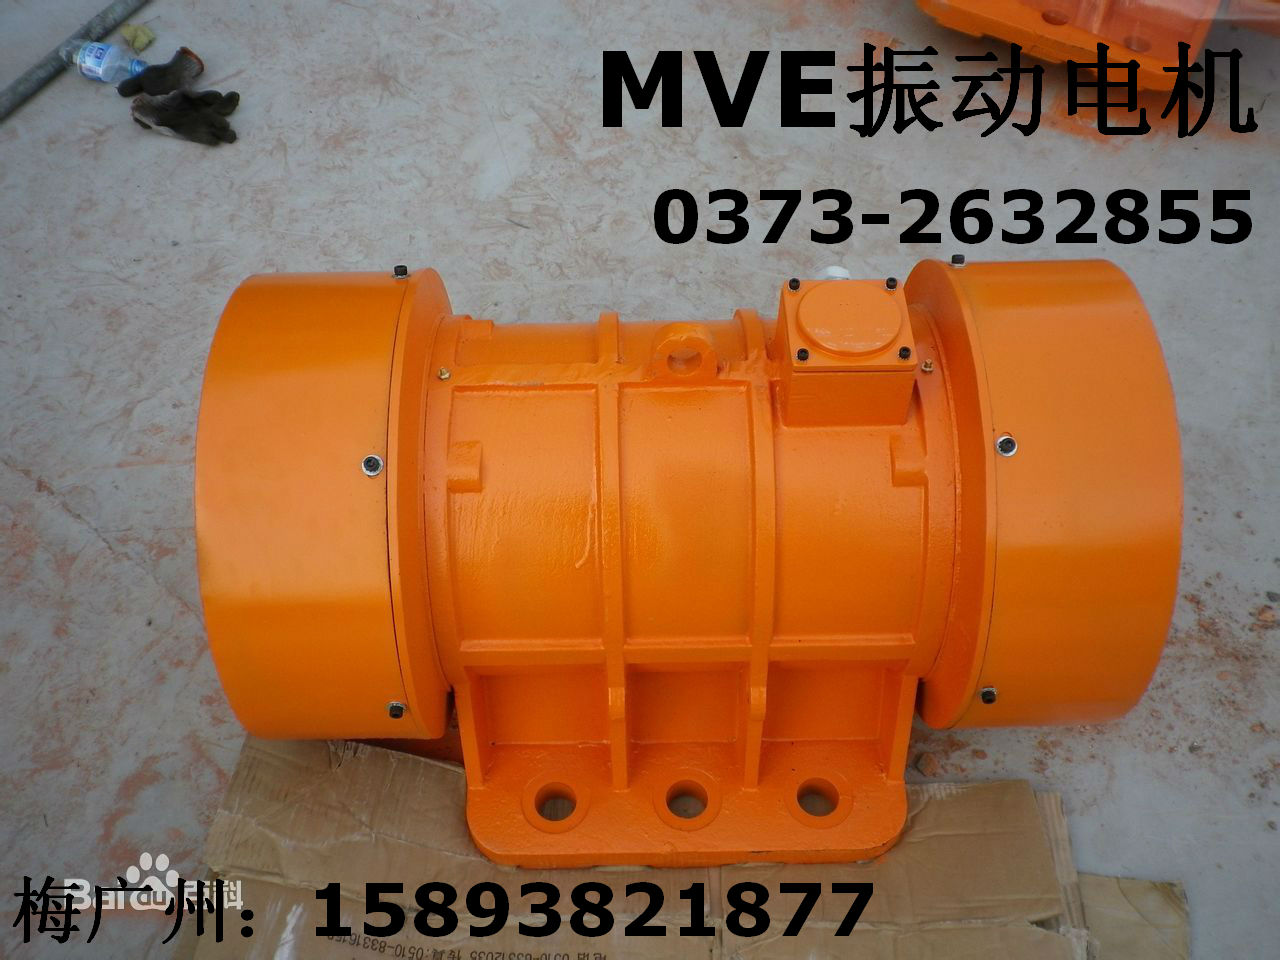 昆明MVE700/15振动源三相振动电机